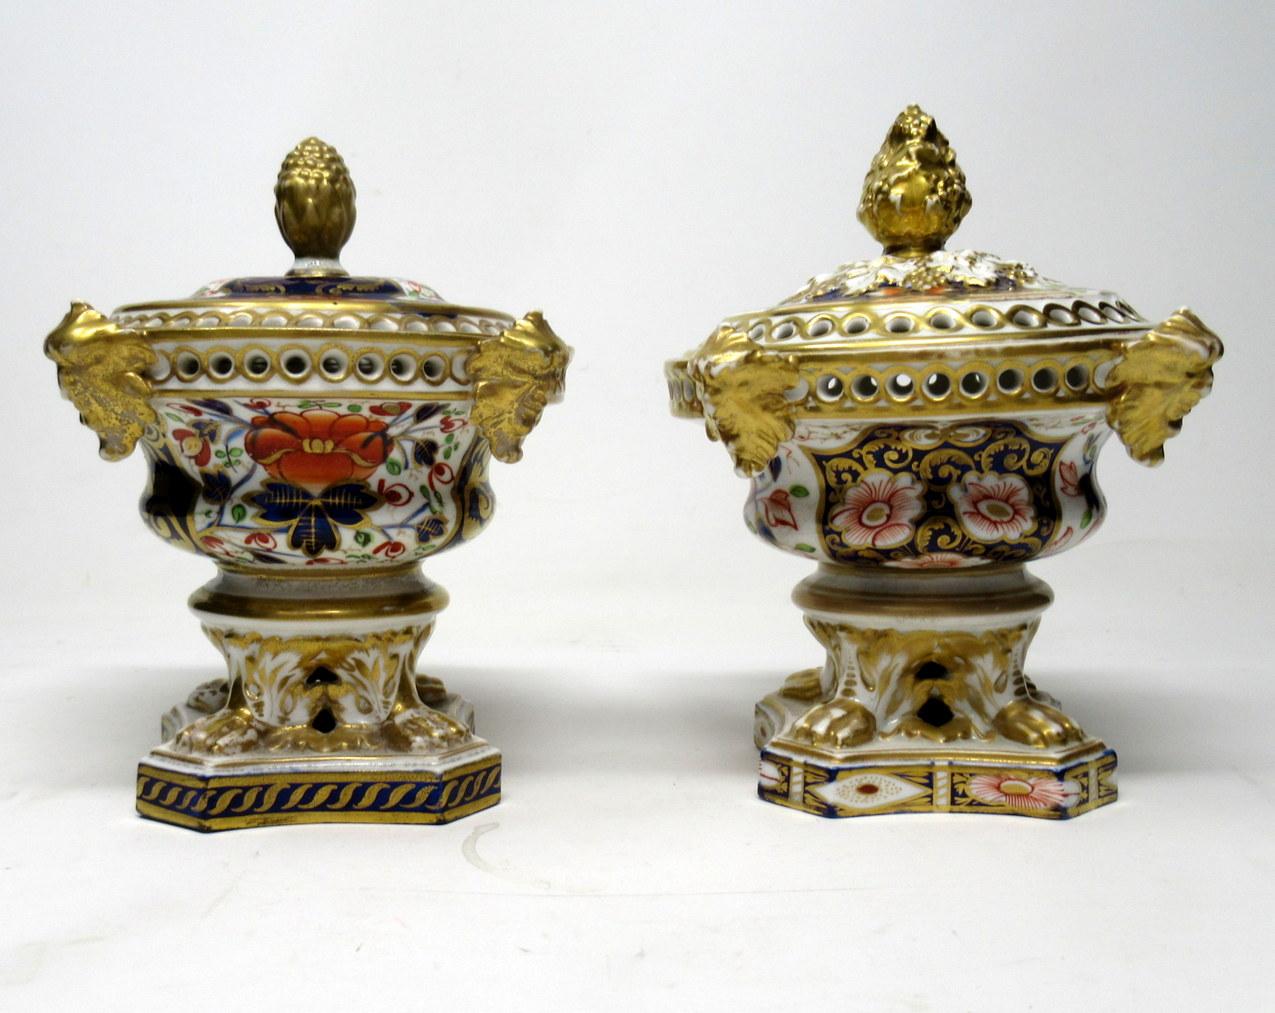 Ceramic Antique Regency English Crown Derby Pair Urns Vases Pot Pourri Centerpieces